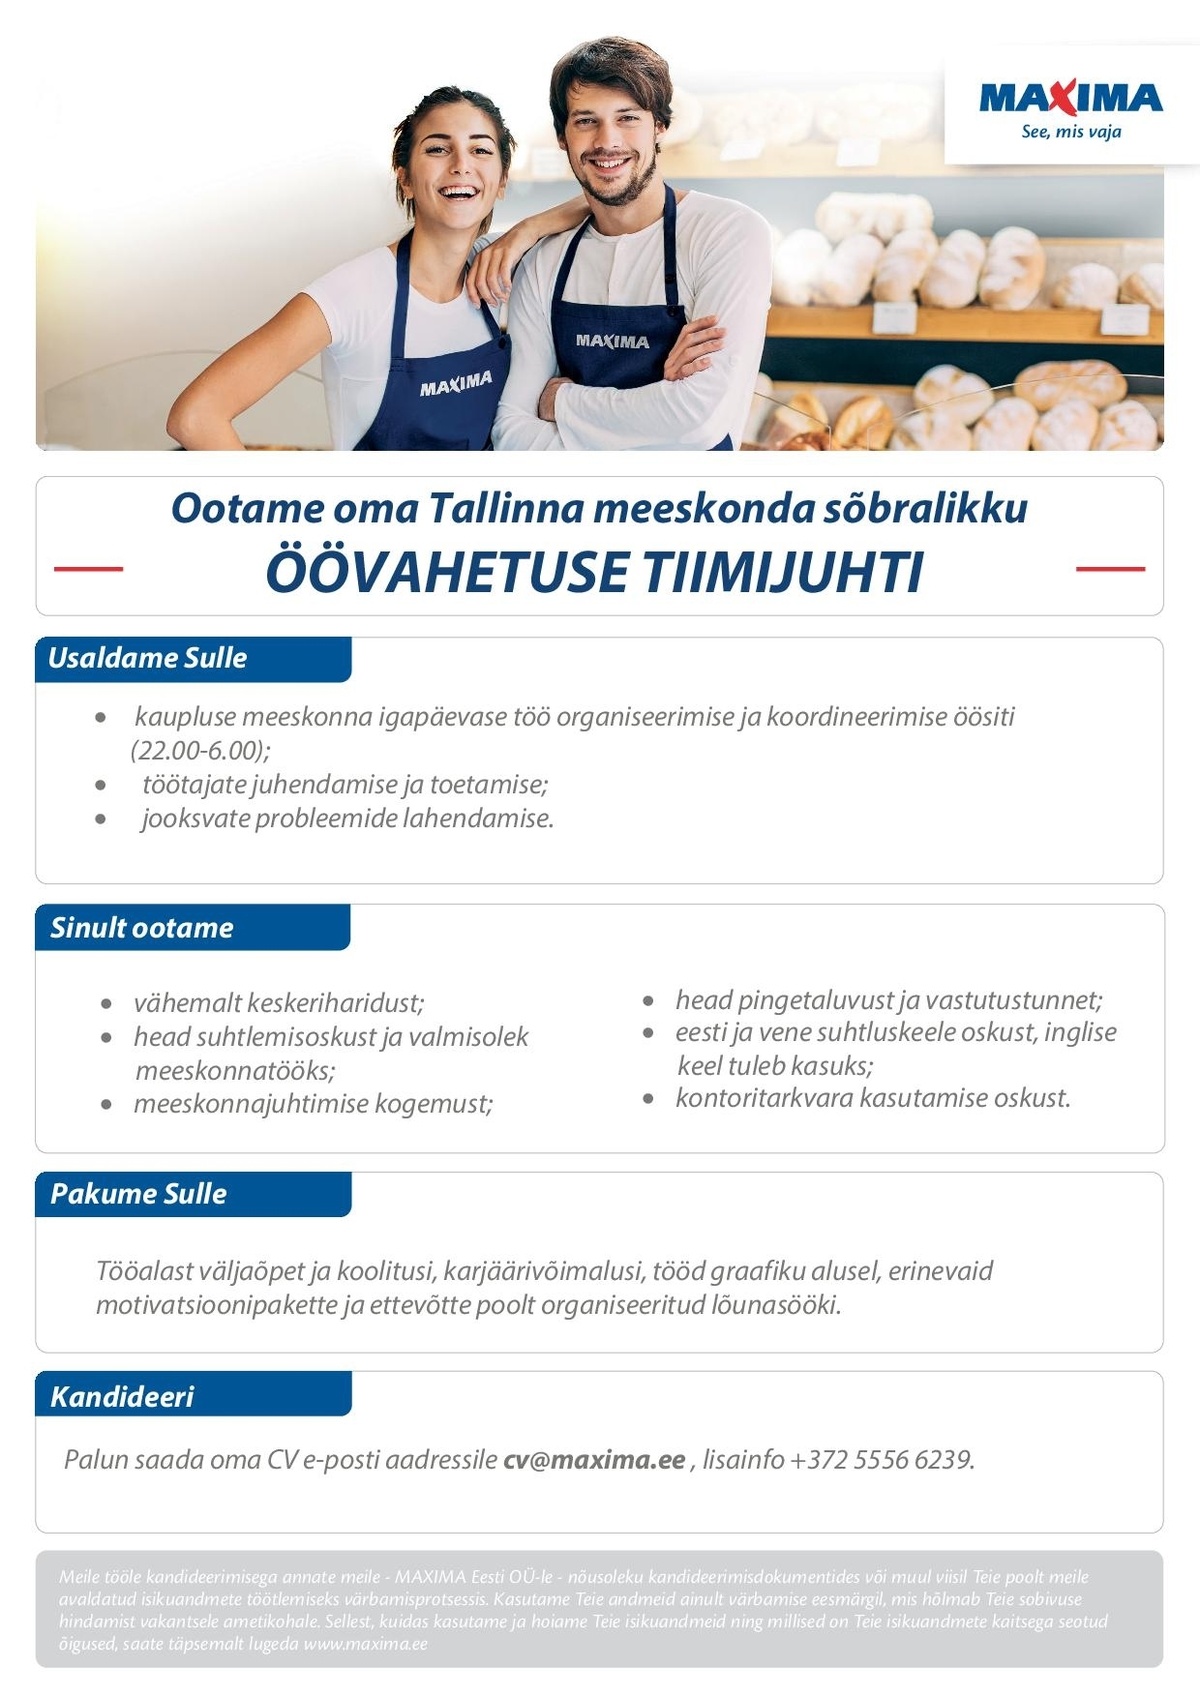 Maxima Eesti OÜ Öövahetuse tiimijuht Tallinna Maximas